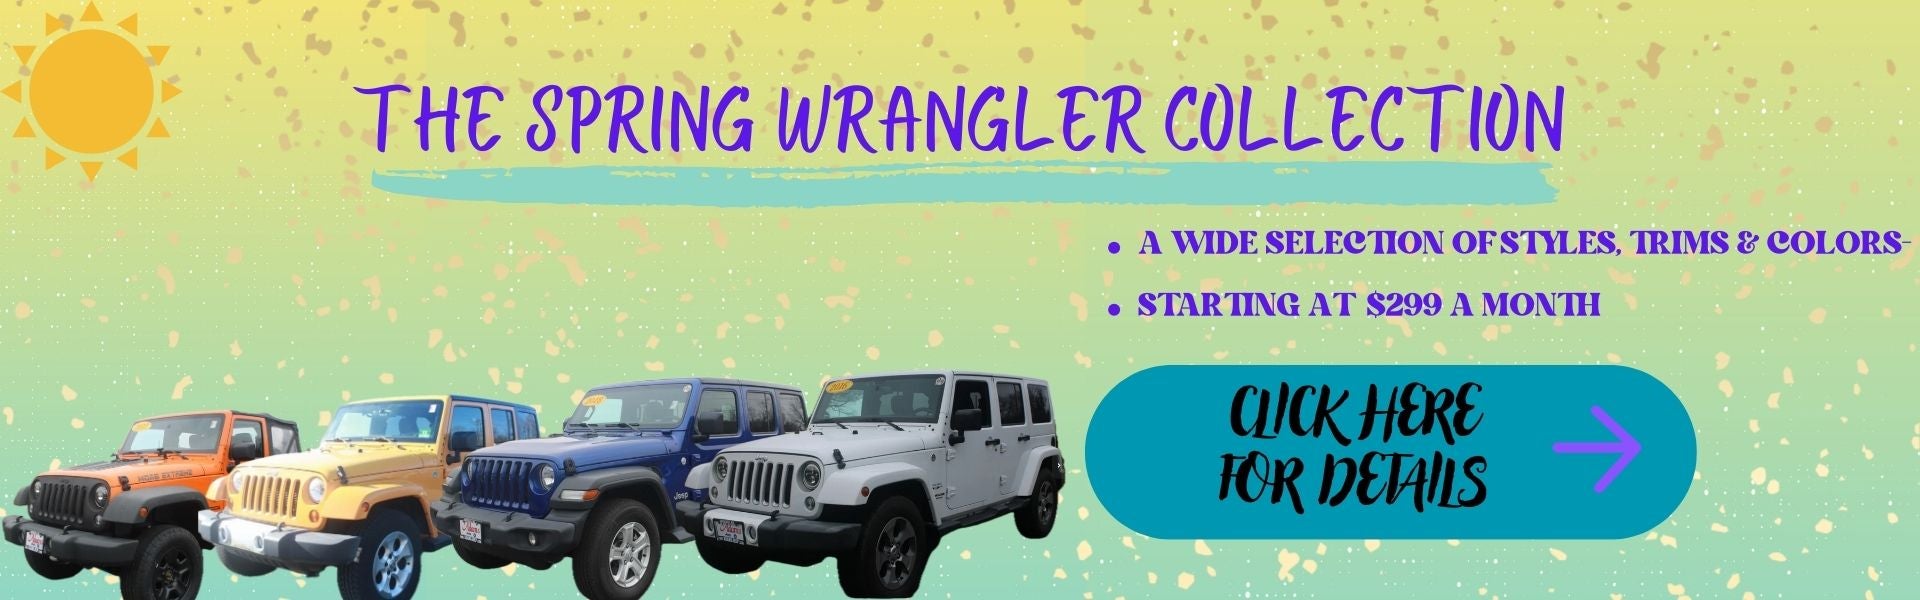 The Spring Wrangler Collection